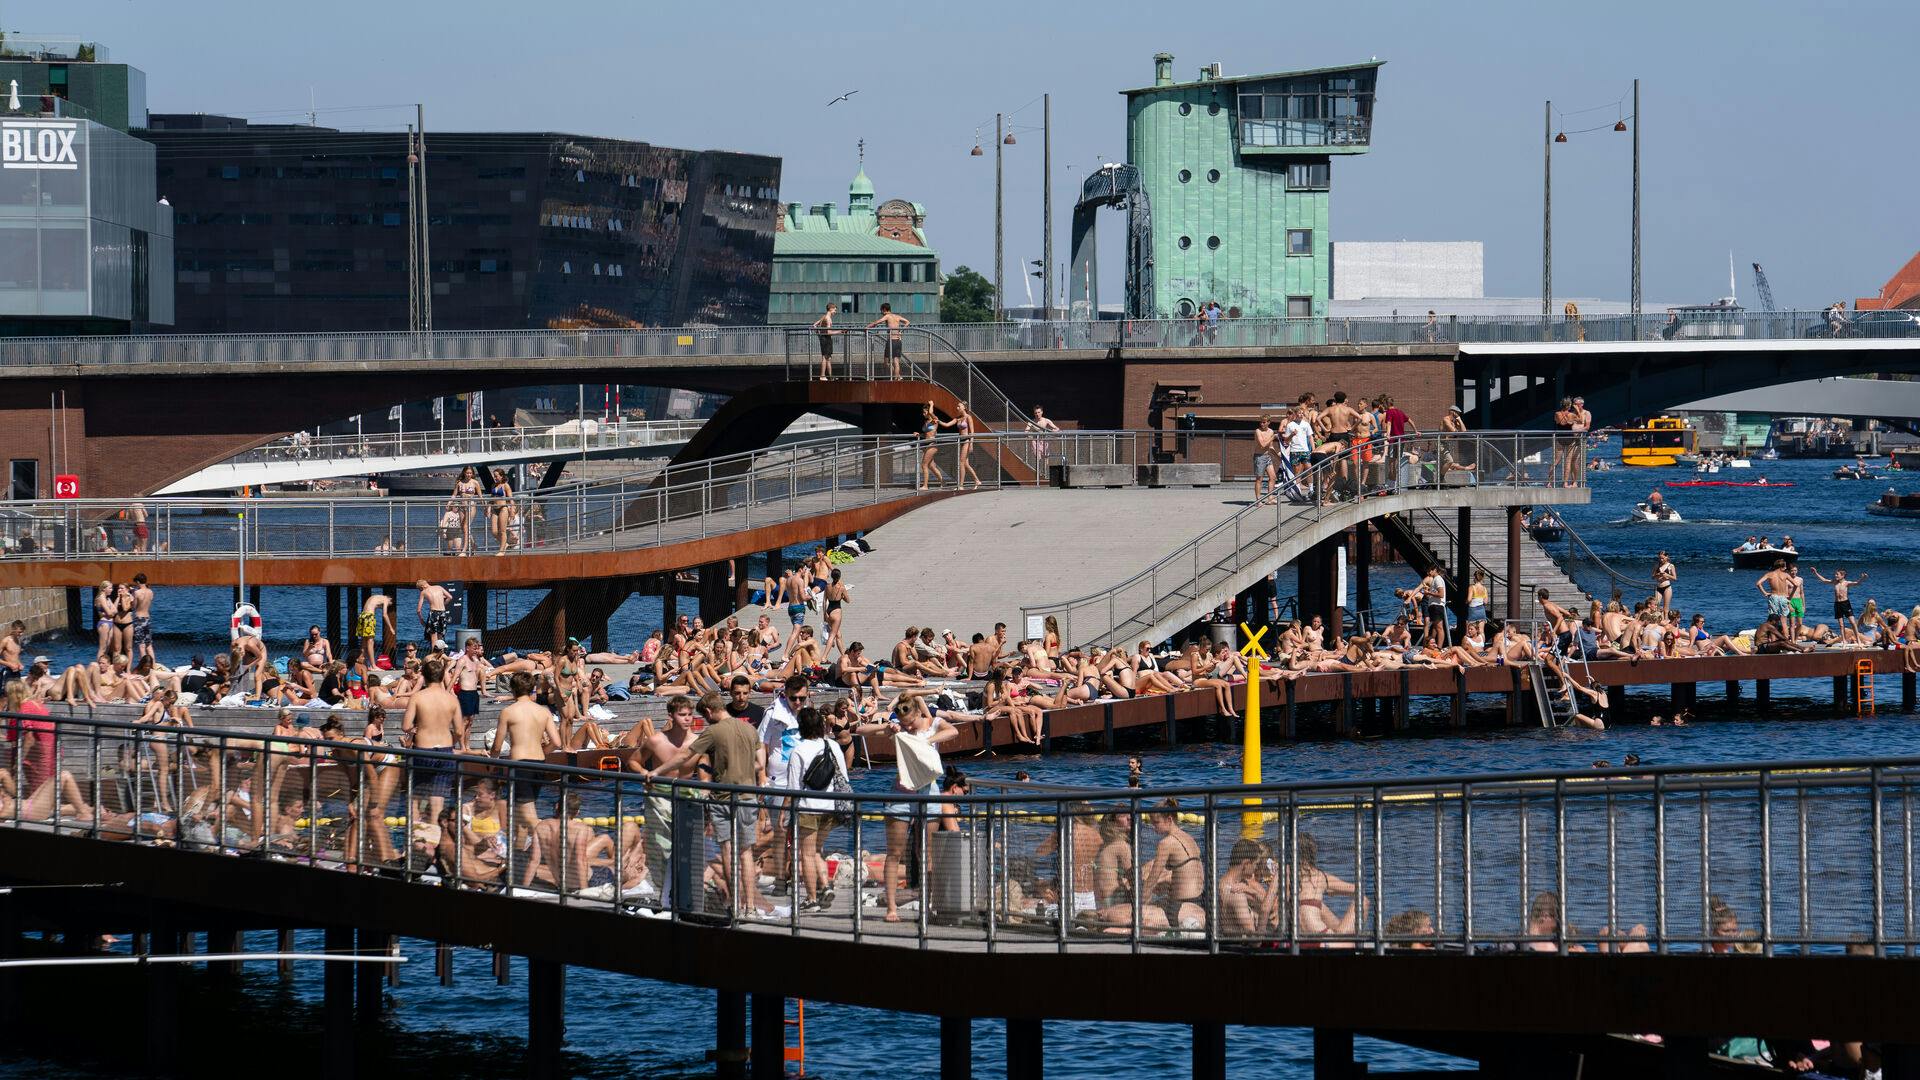 Nu bliver det varmt, og det betyder, at der kommer flere mennesker med musik på de offentlige områder i de dansker byer.
